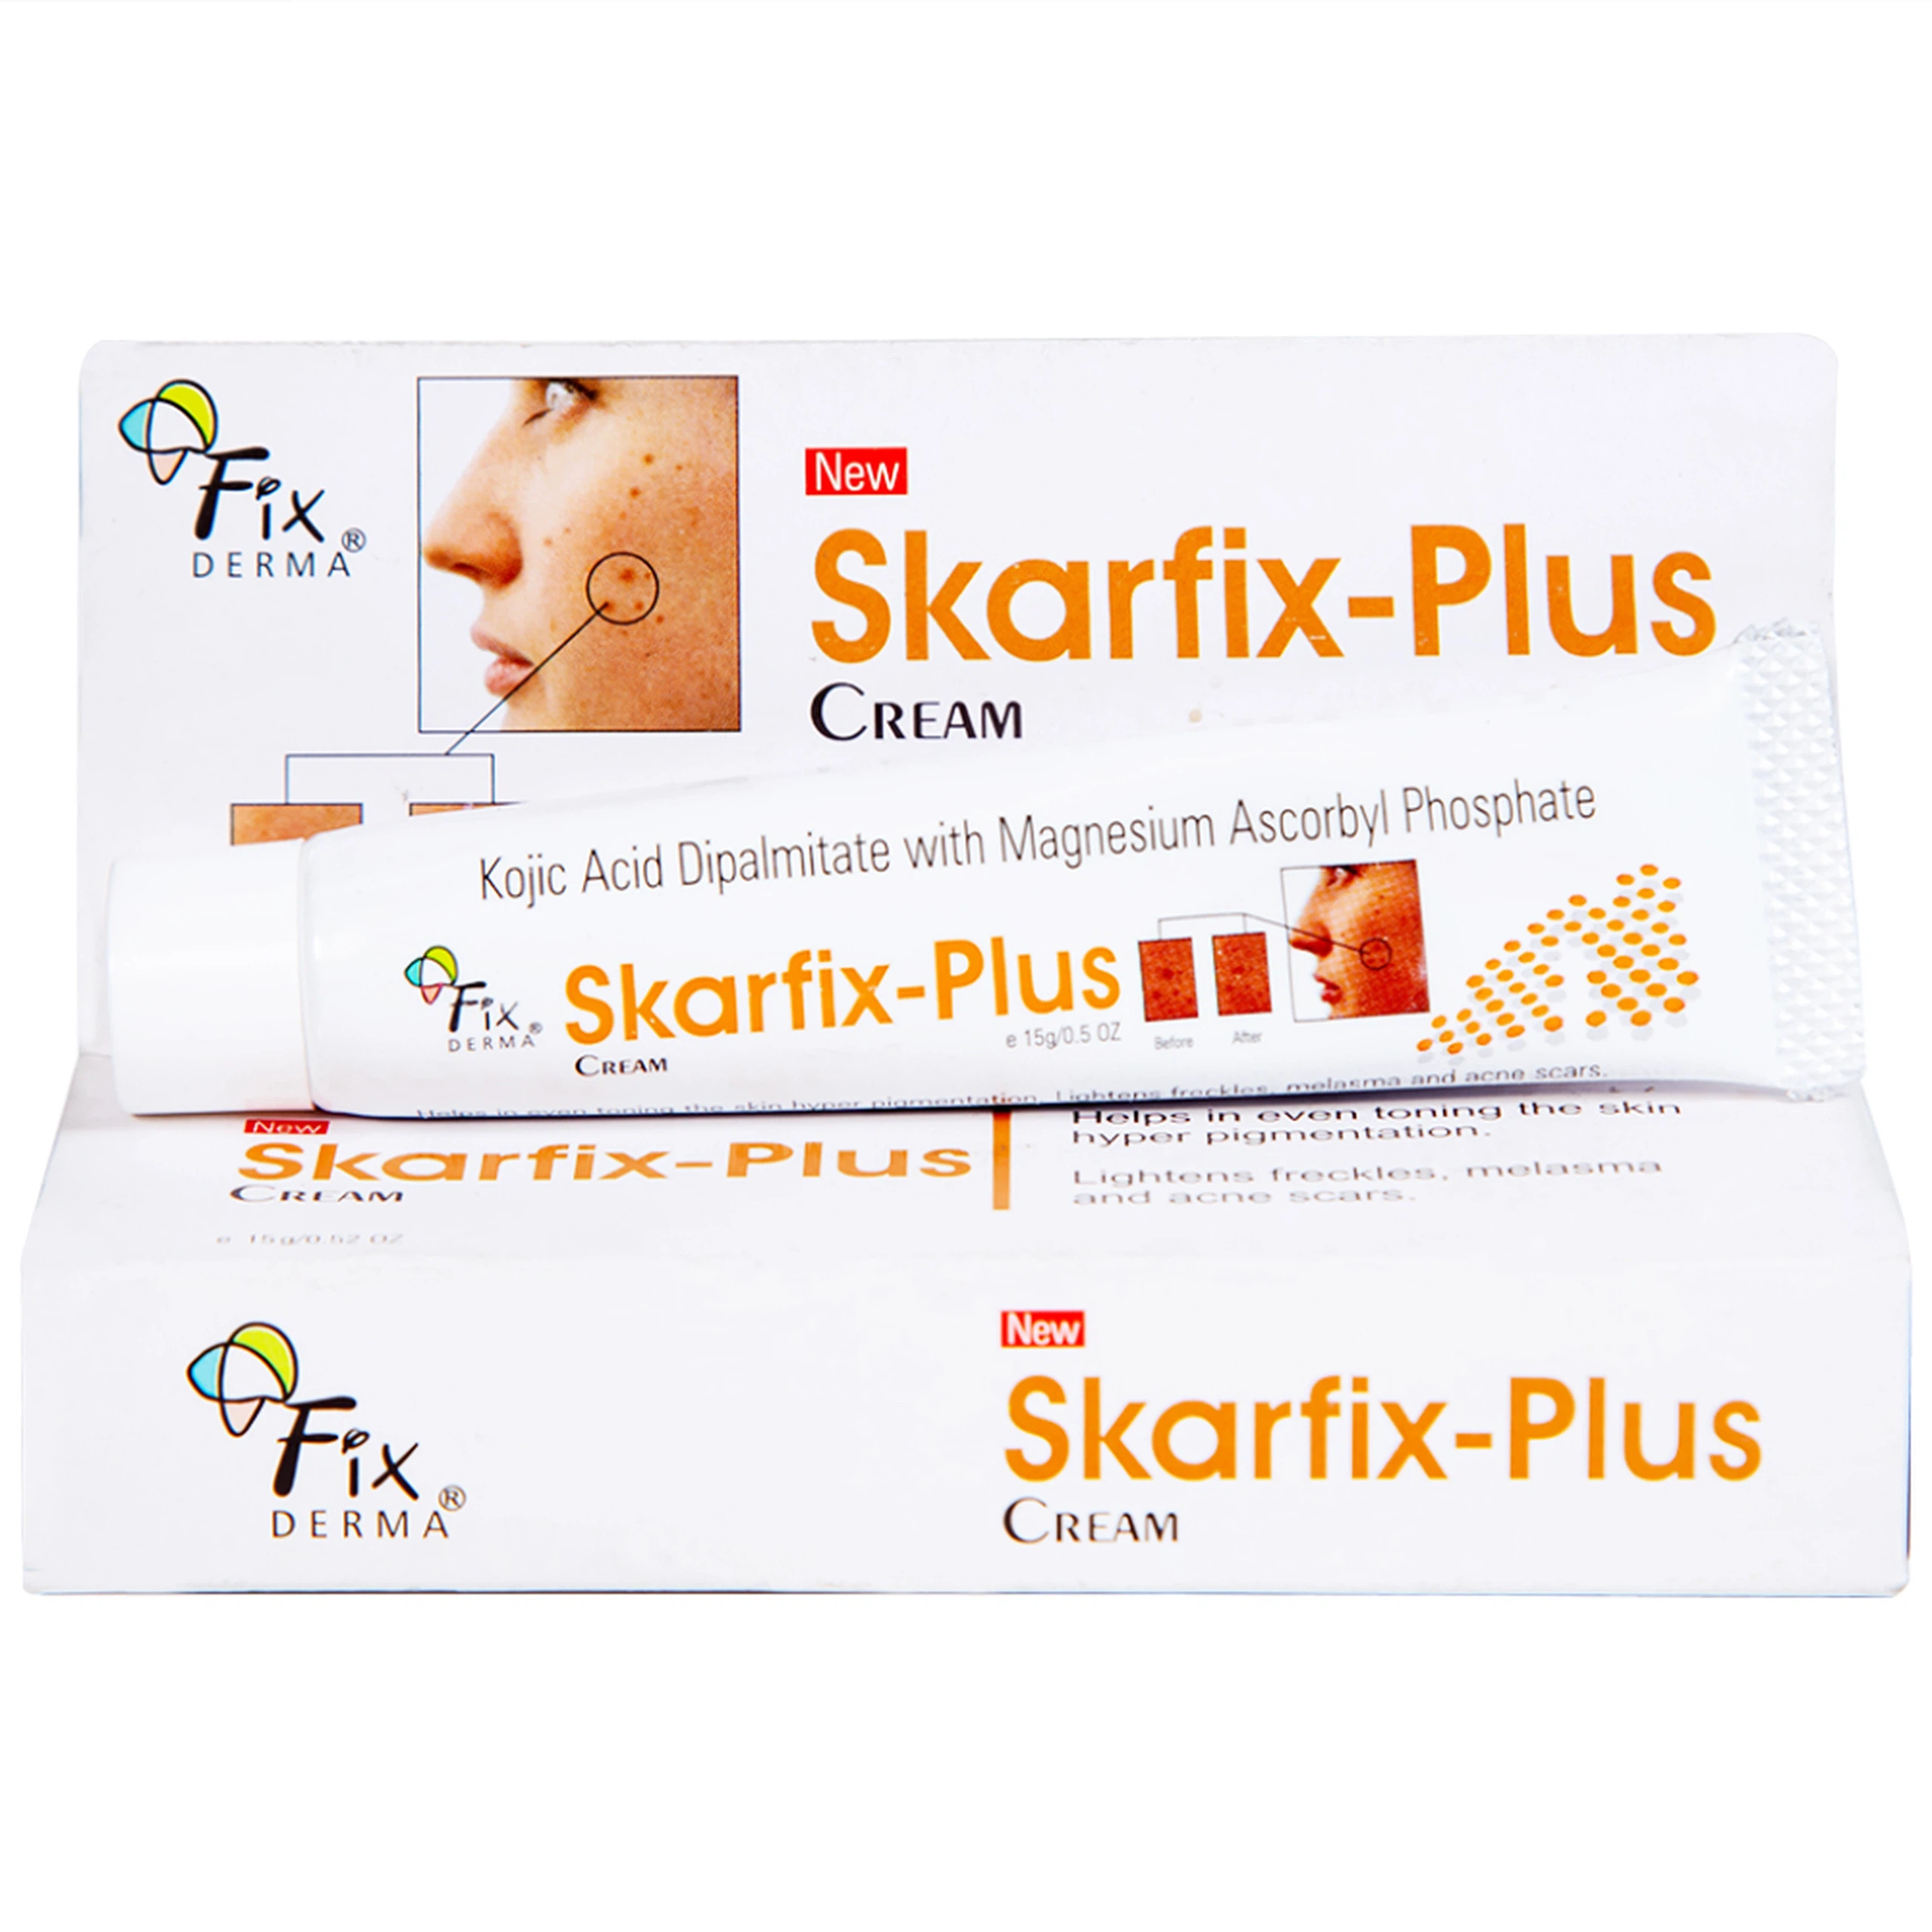 Kem làm sáng da Skarfix-Plus Cream Fixderma mờ vết thâm, đốm đen (15g)